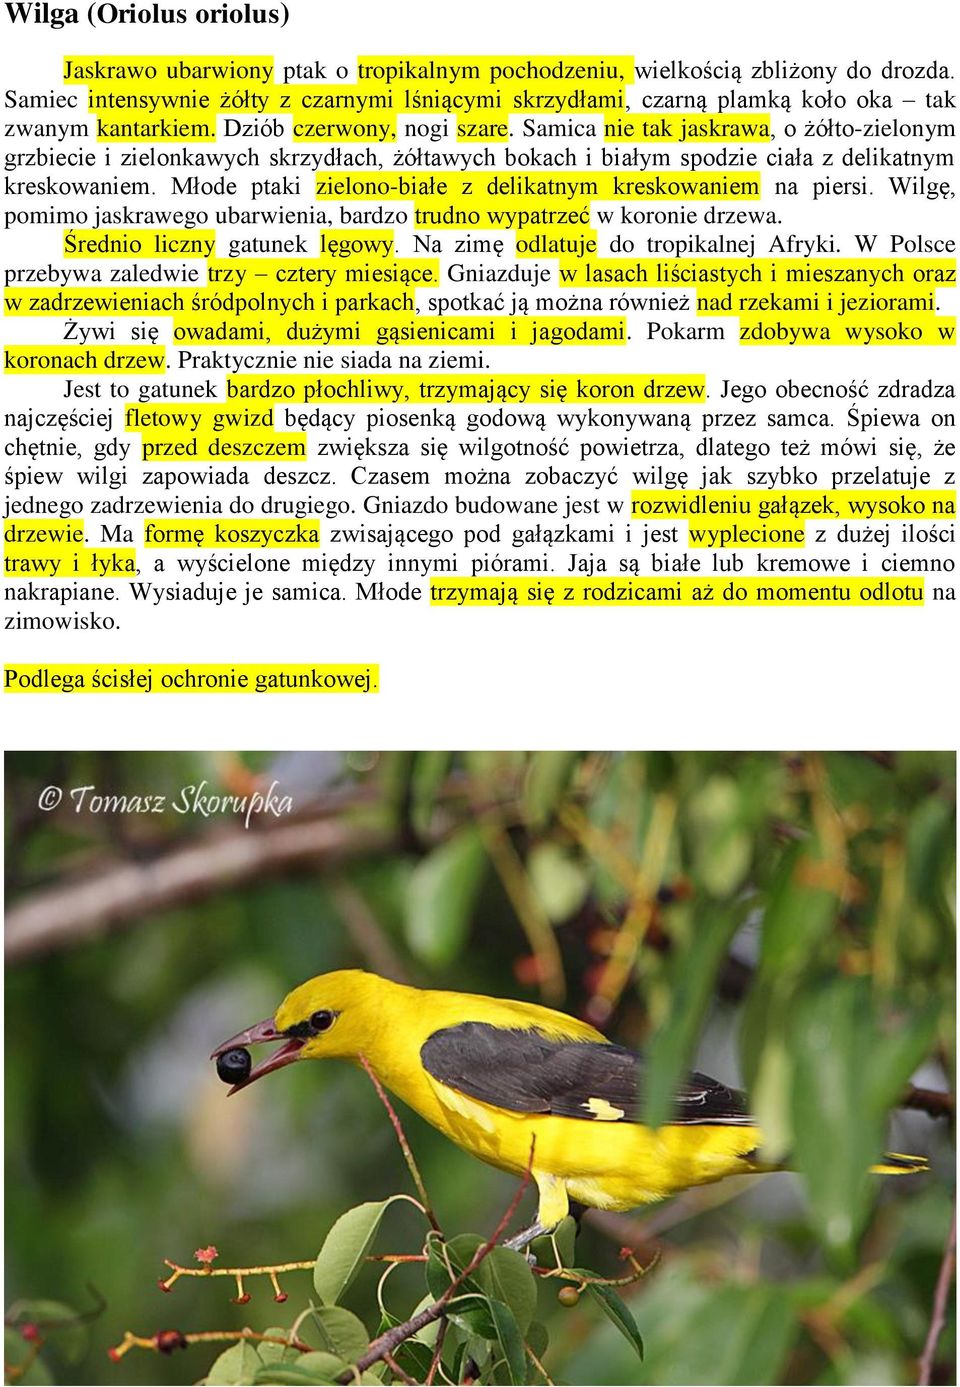 Samica nie tak jaskrawa, o żółto-zielonym grzbiecie i zielonkawych skrzydłach, żółtawych bokach i białym spodzie ciała z delikatnym kreskowaniem.